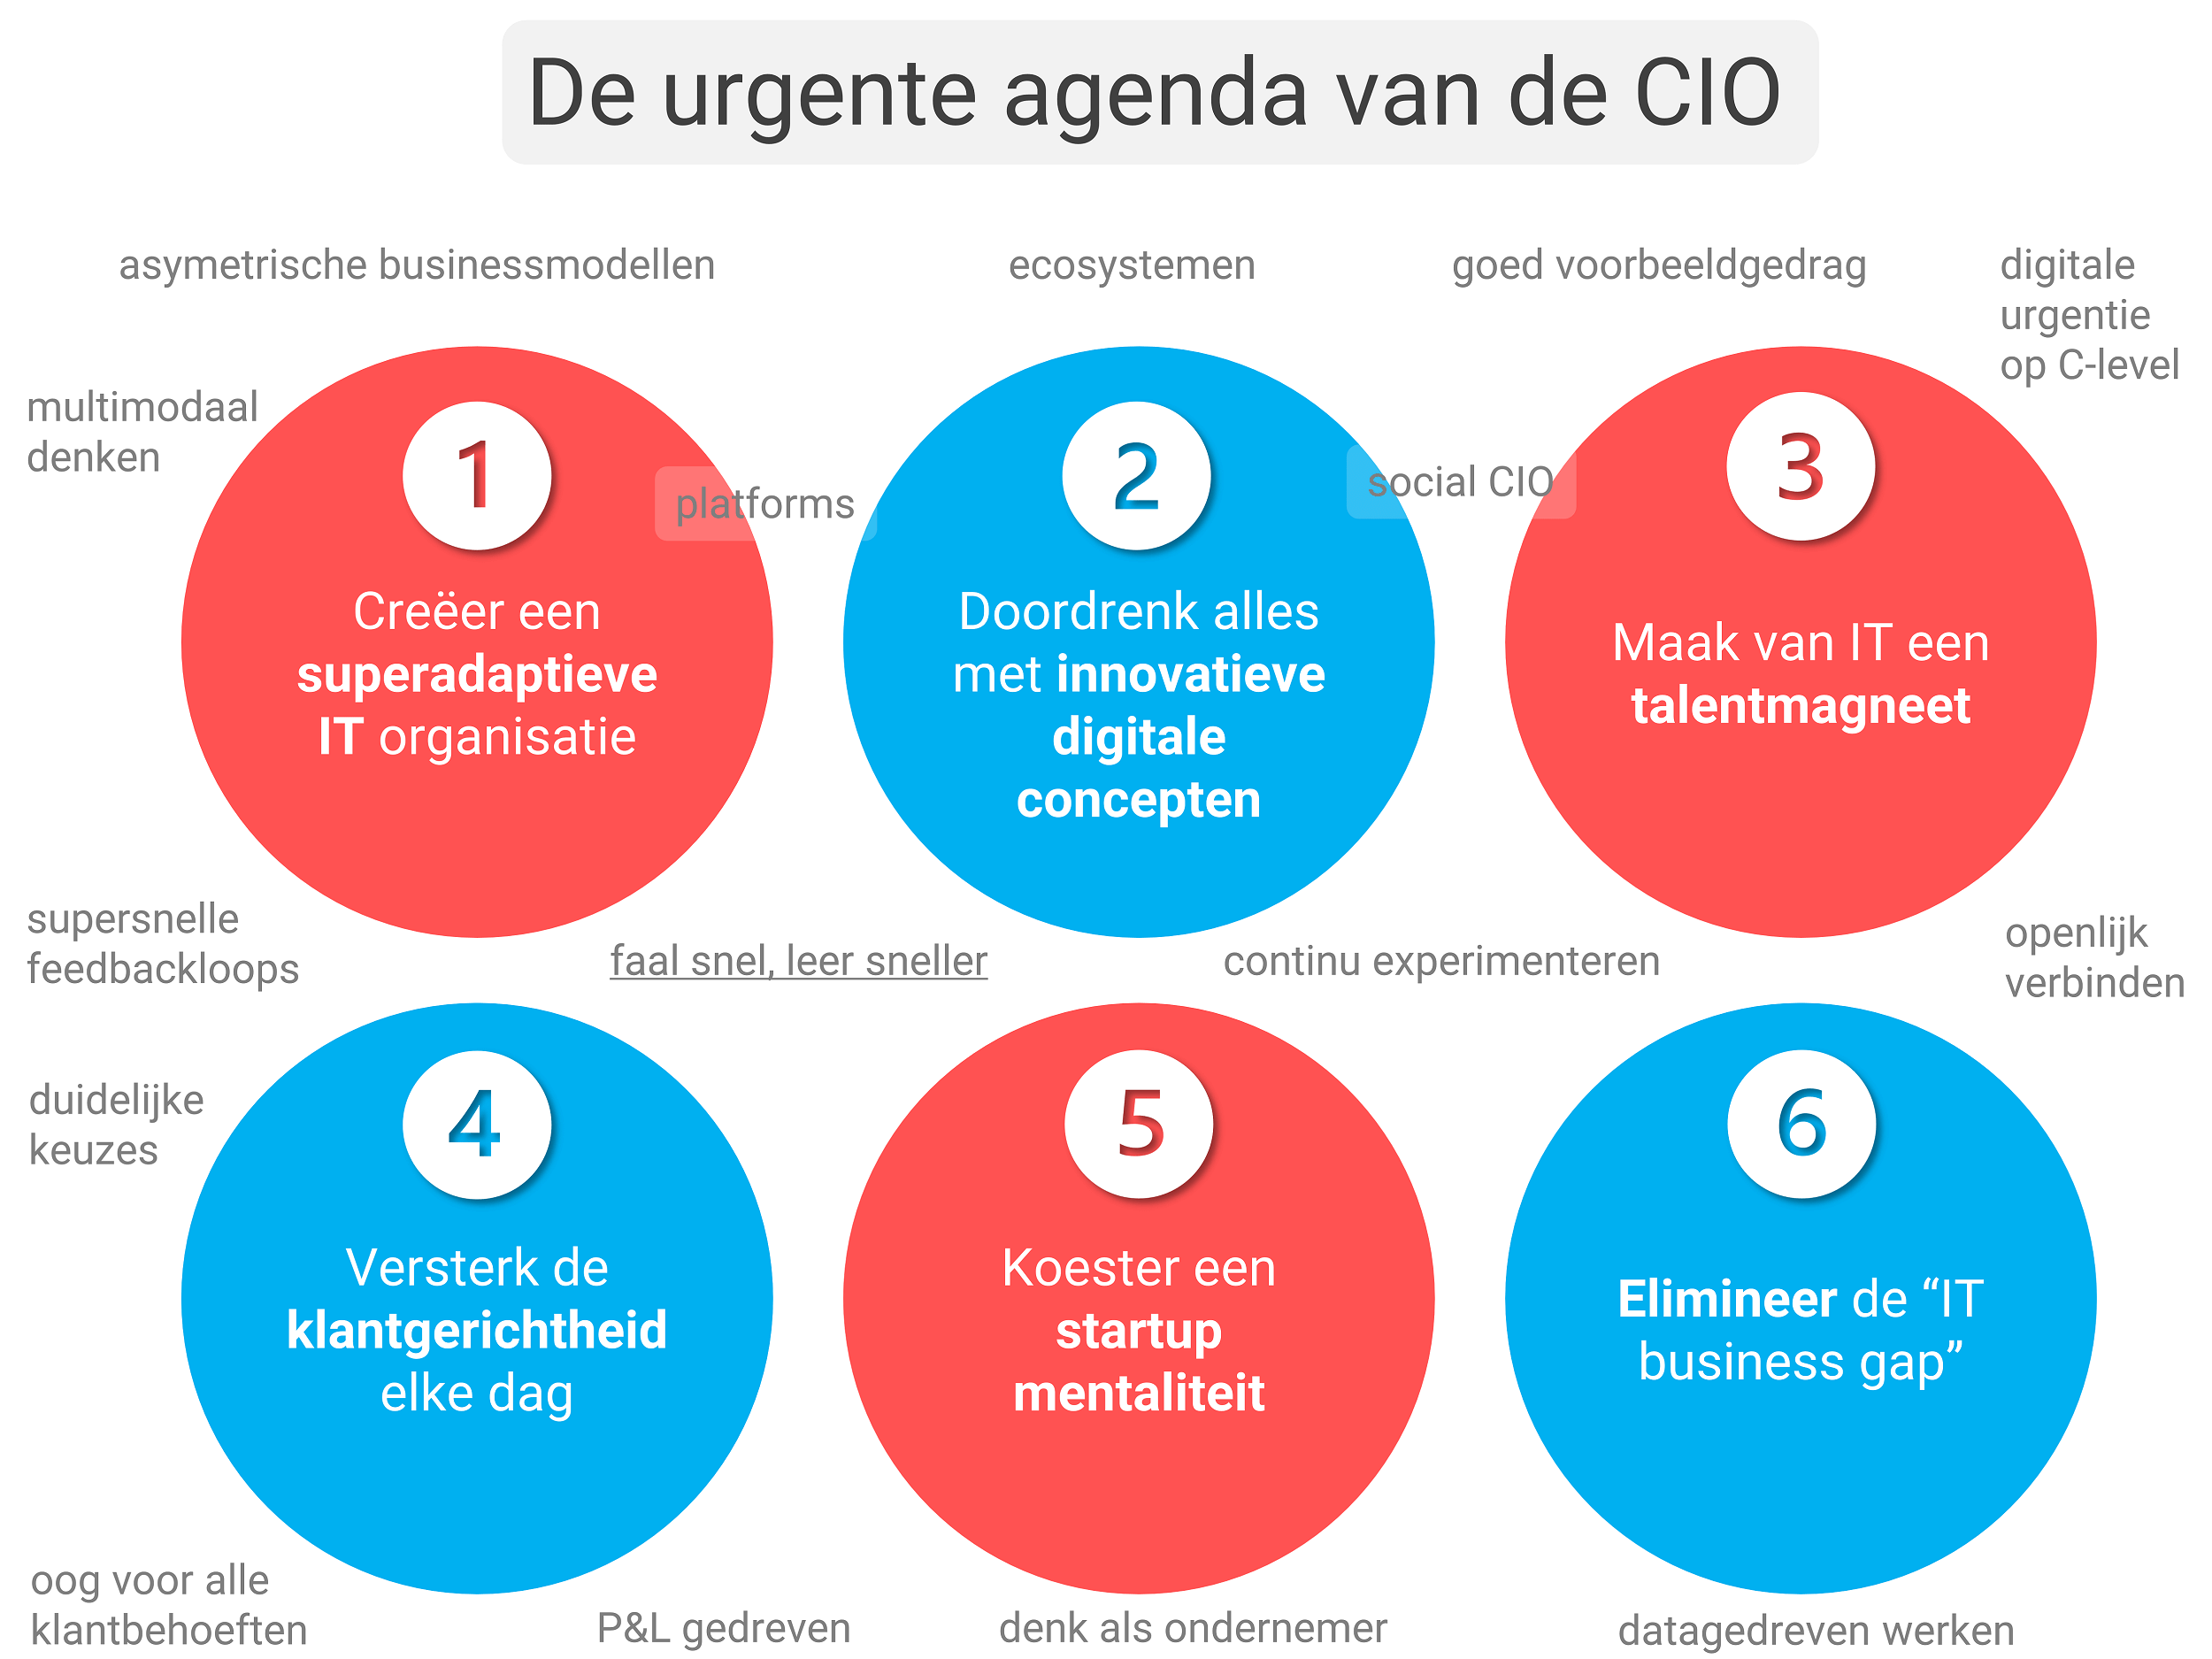 De urgente agenda van de CIO